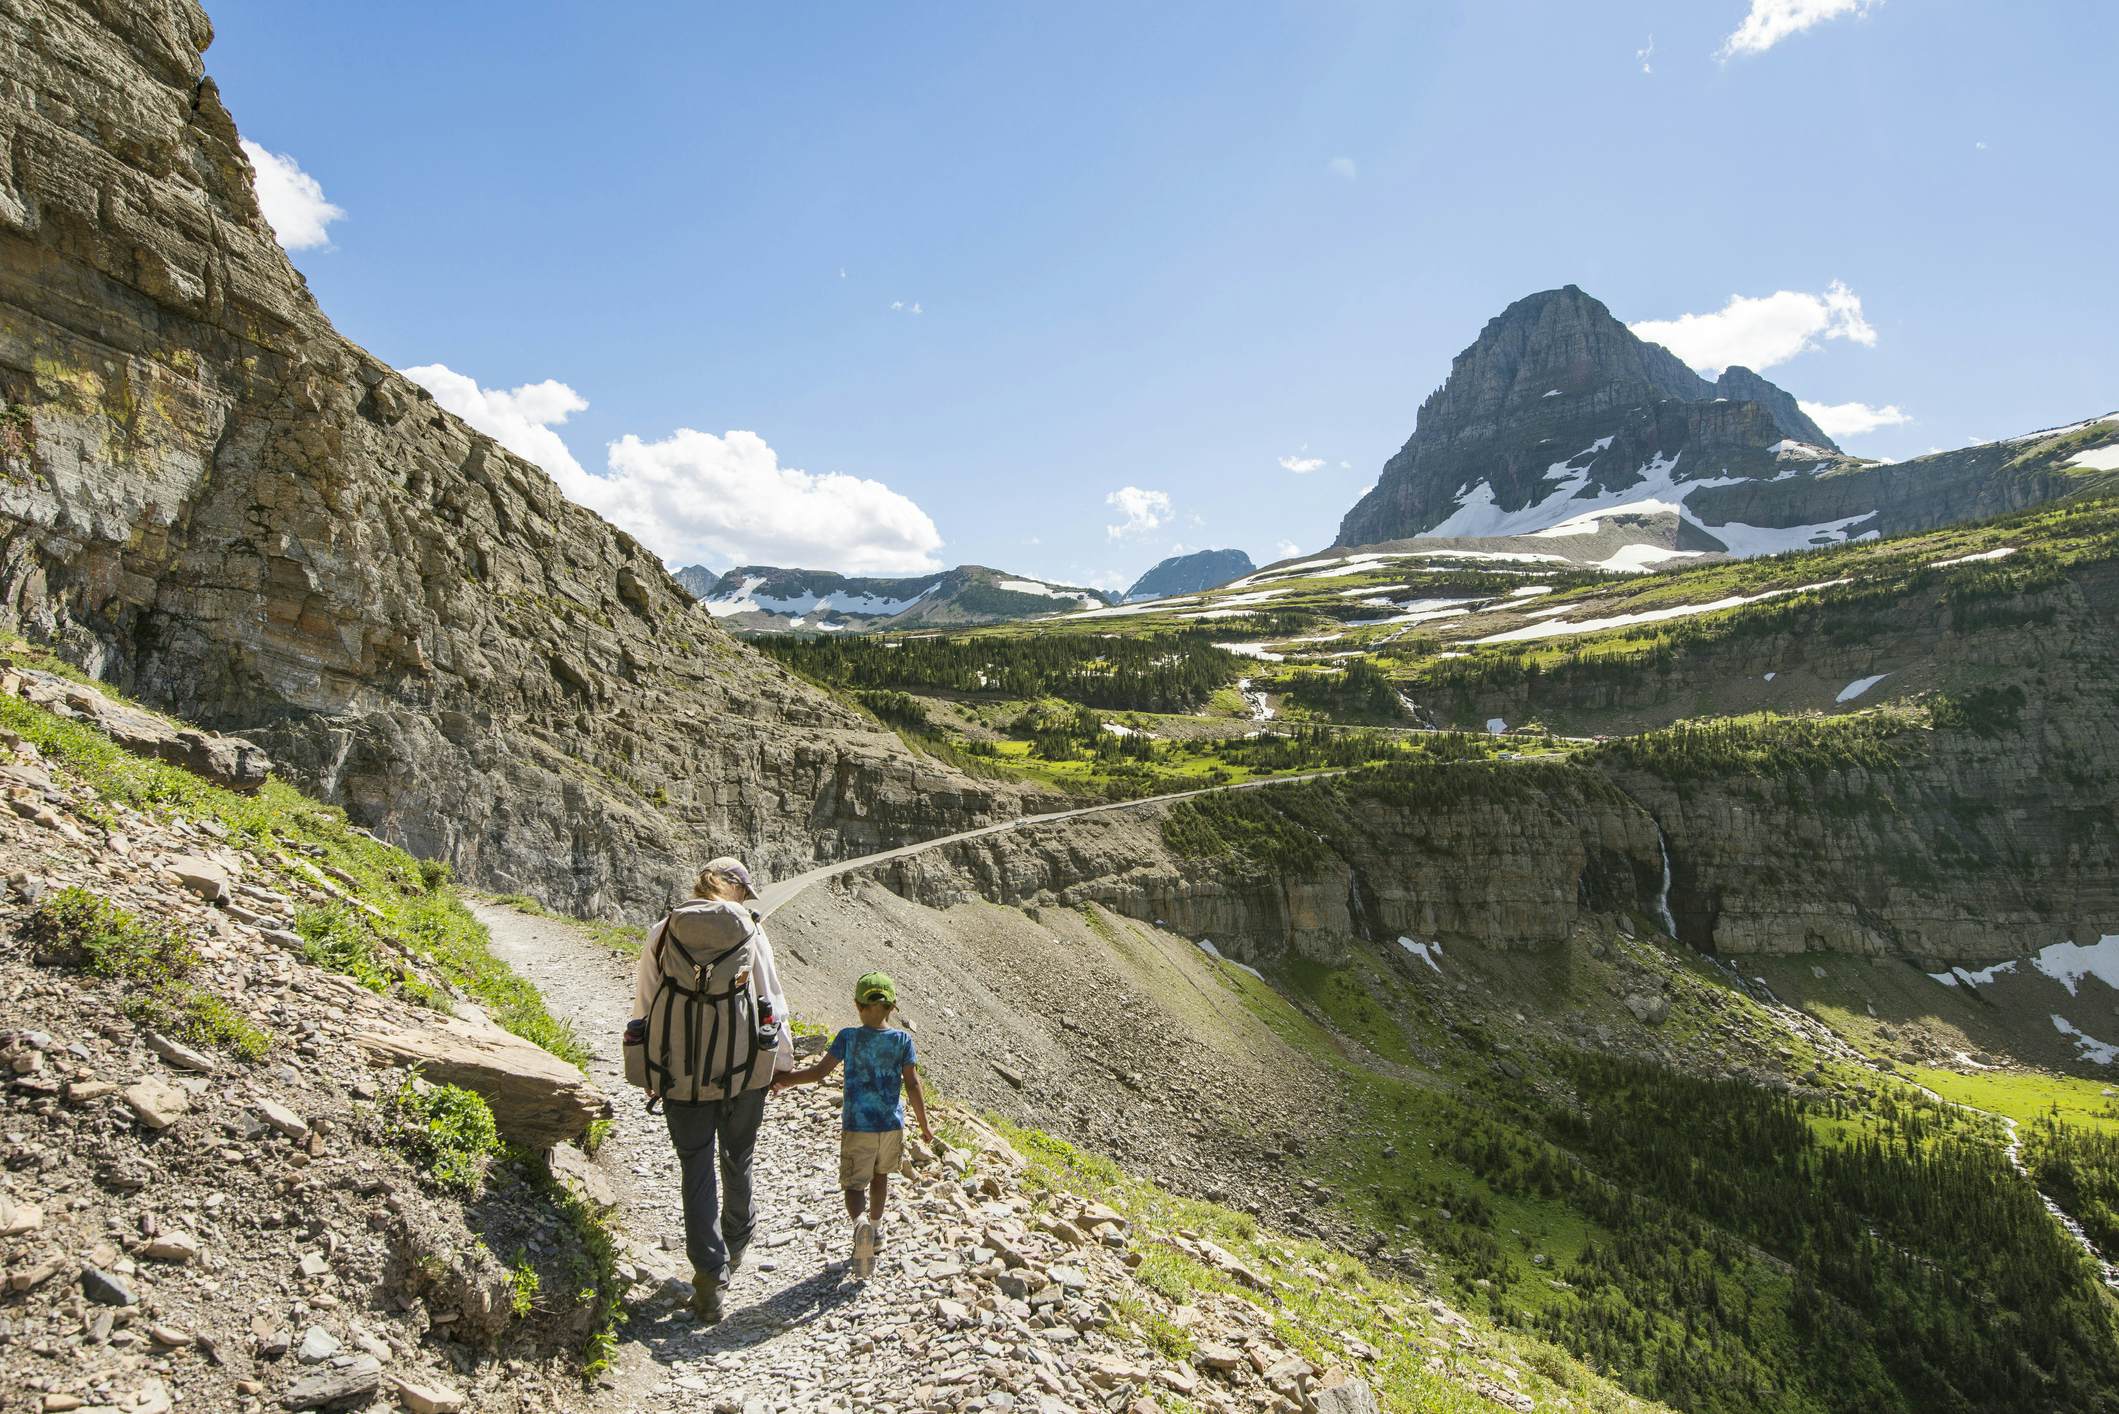 Hiking the Trails - Glacier National Park (U.S. National Park Service)